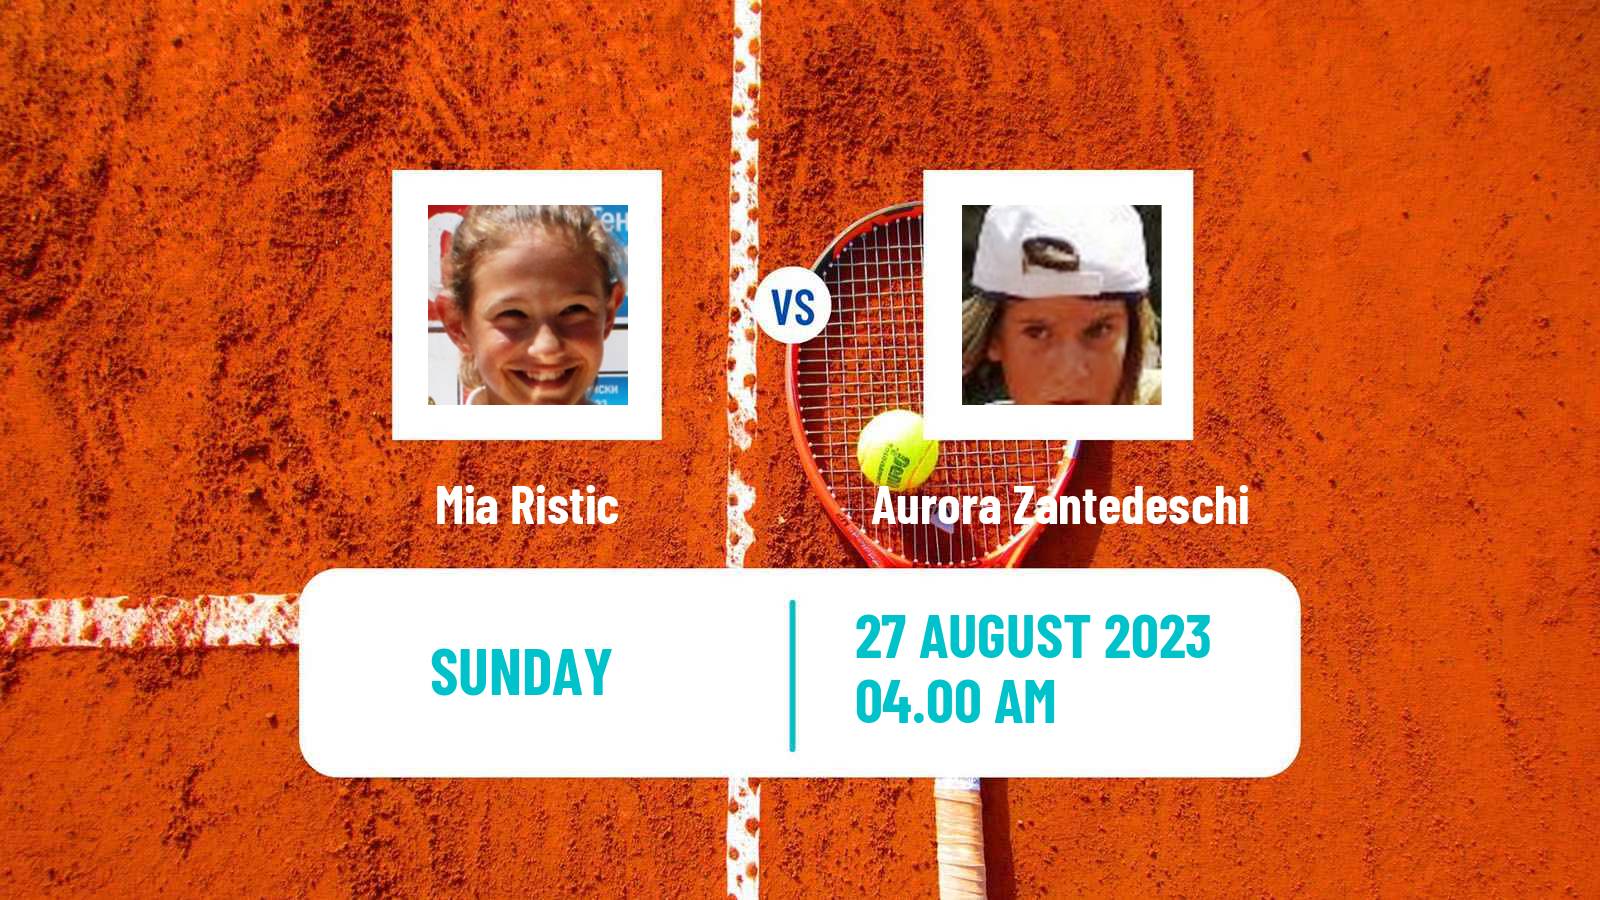 Tennis ITF W60 Prerov Women Mia Ristic - Aurora Zantedeschi